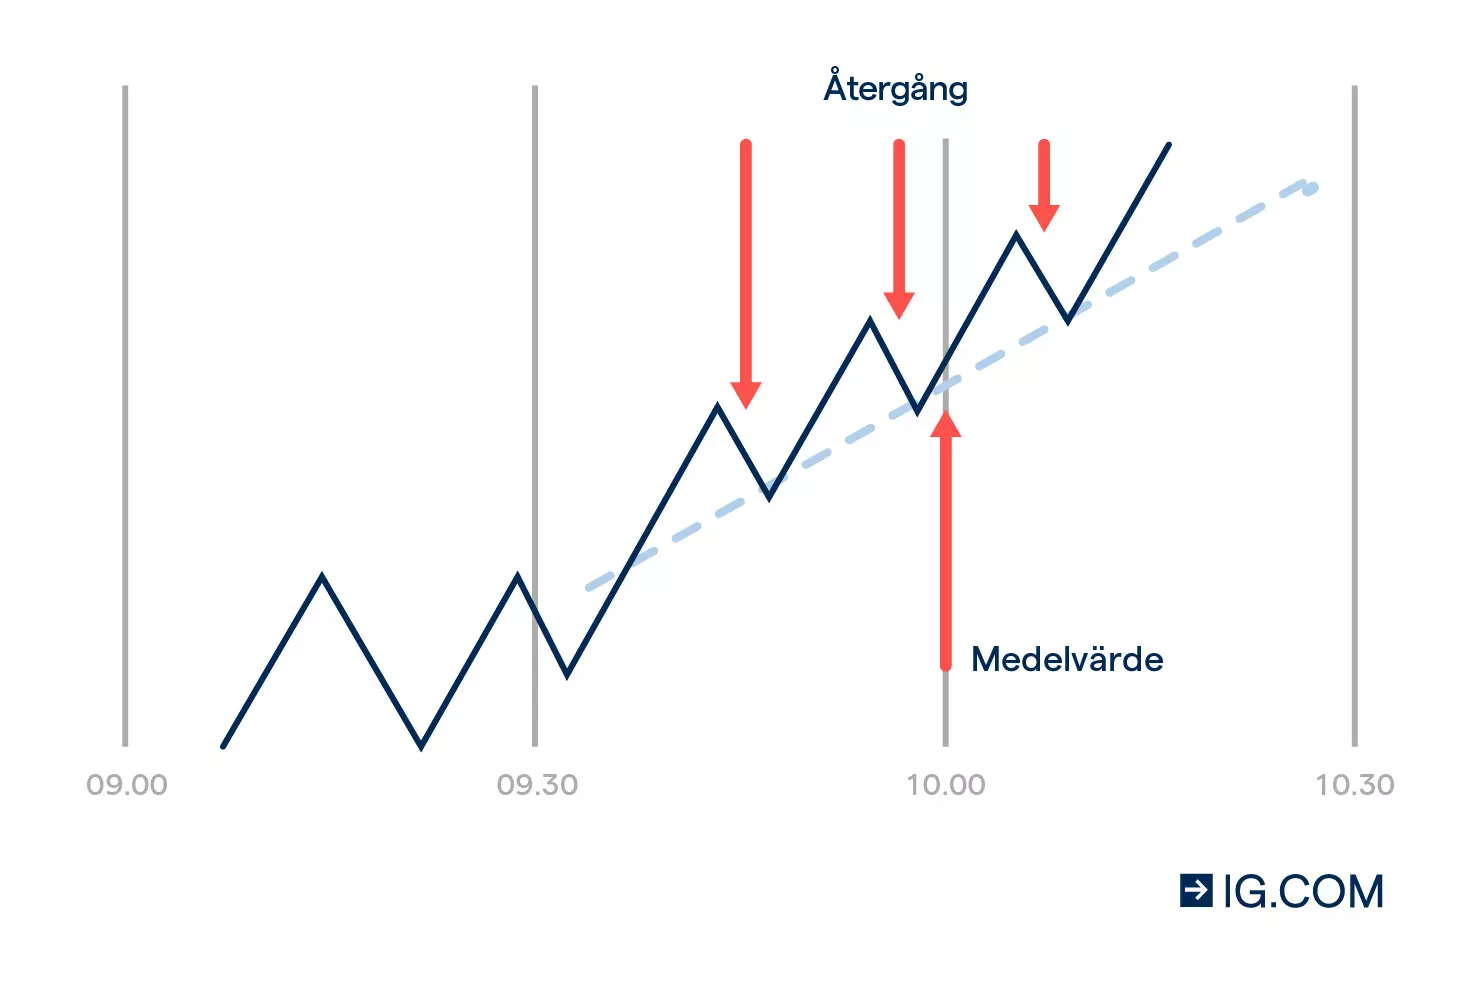 Graf som visar en prisrörelse med en reversion och ett medelvärde som uppstår efter en viss tid.